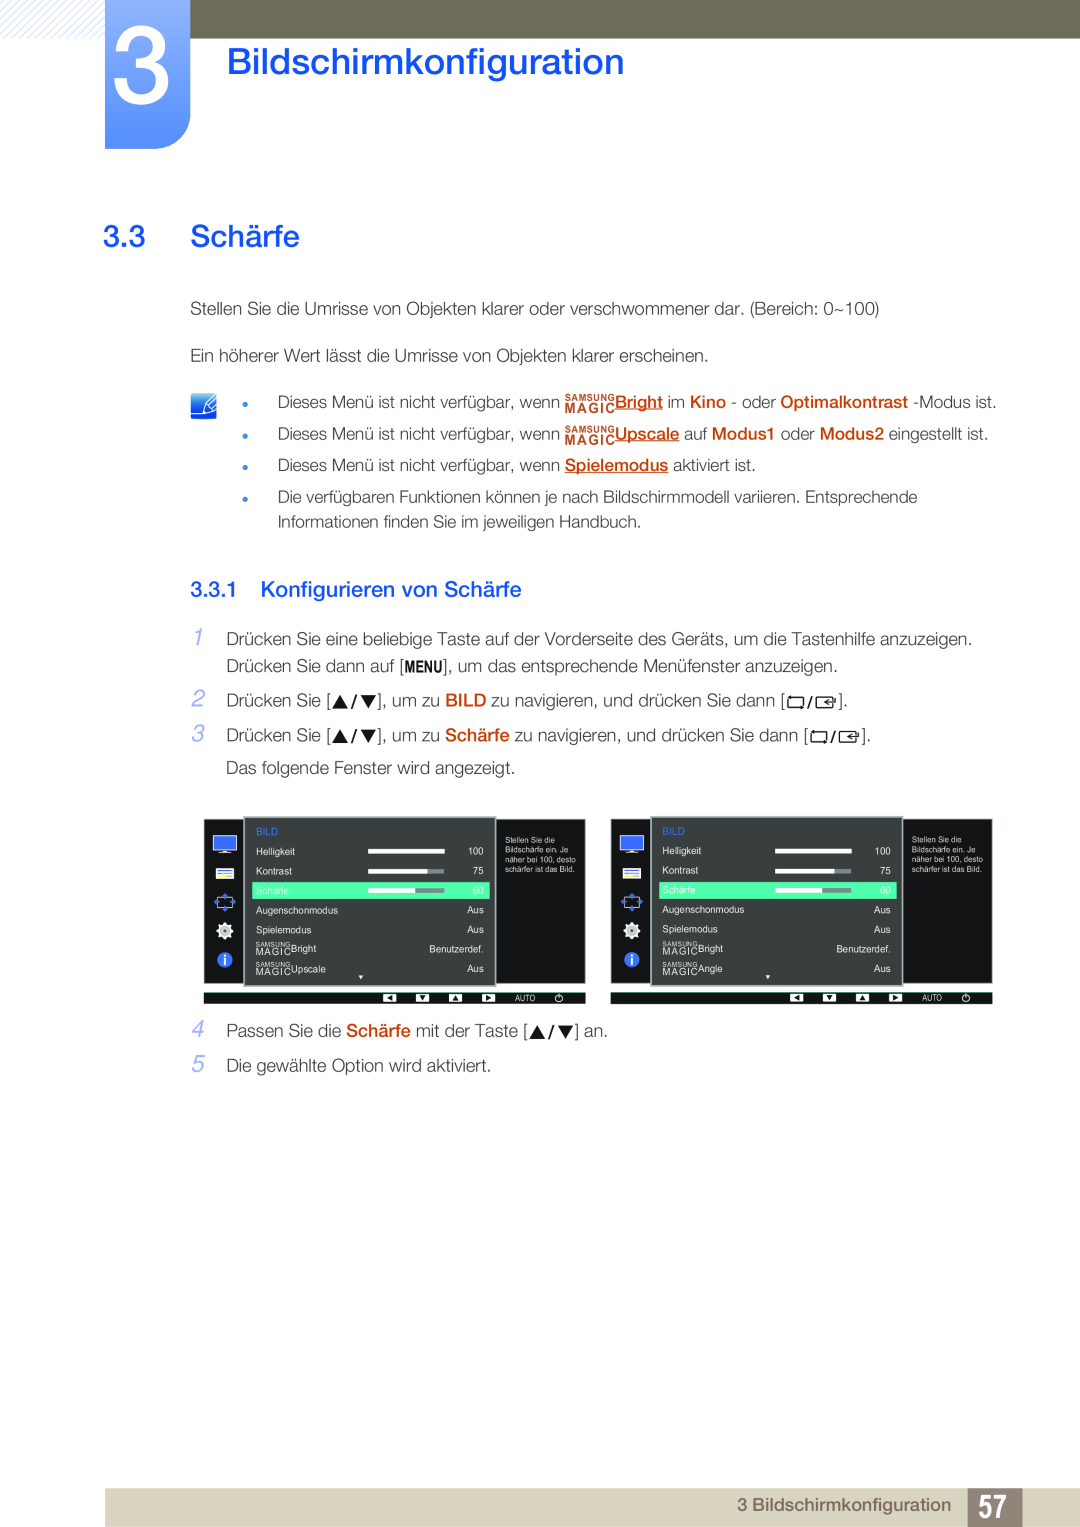 Samsung LS24E65UDWG/EN, LS23E65UDC/EN, LS24E45UDLC/EN manual 3.3 Schärfe, Konfigurieren von Schärfe, Bildschirmkonfiguration 